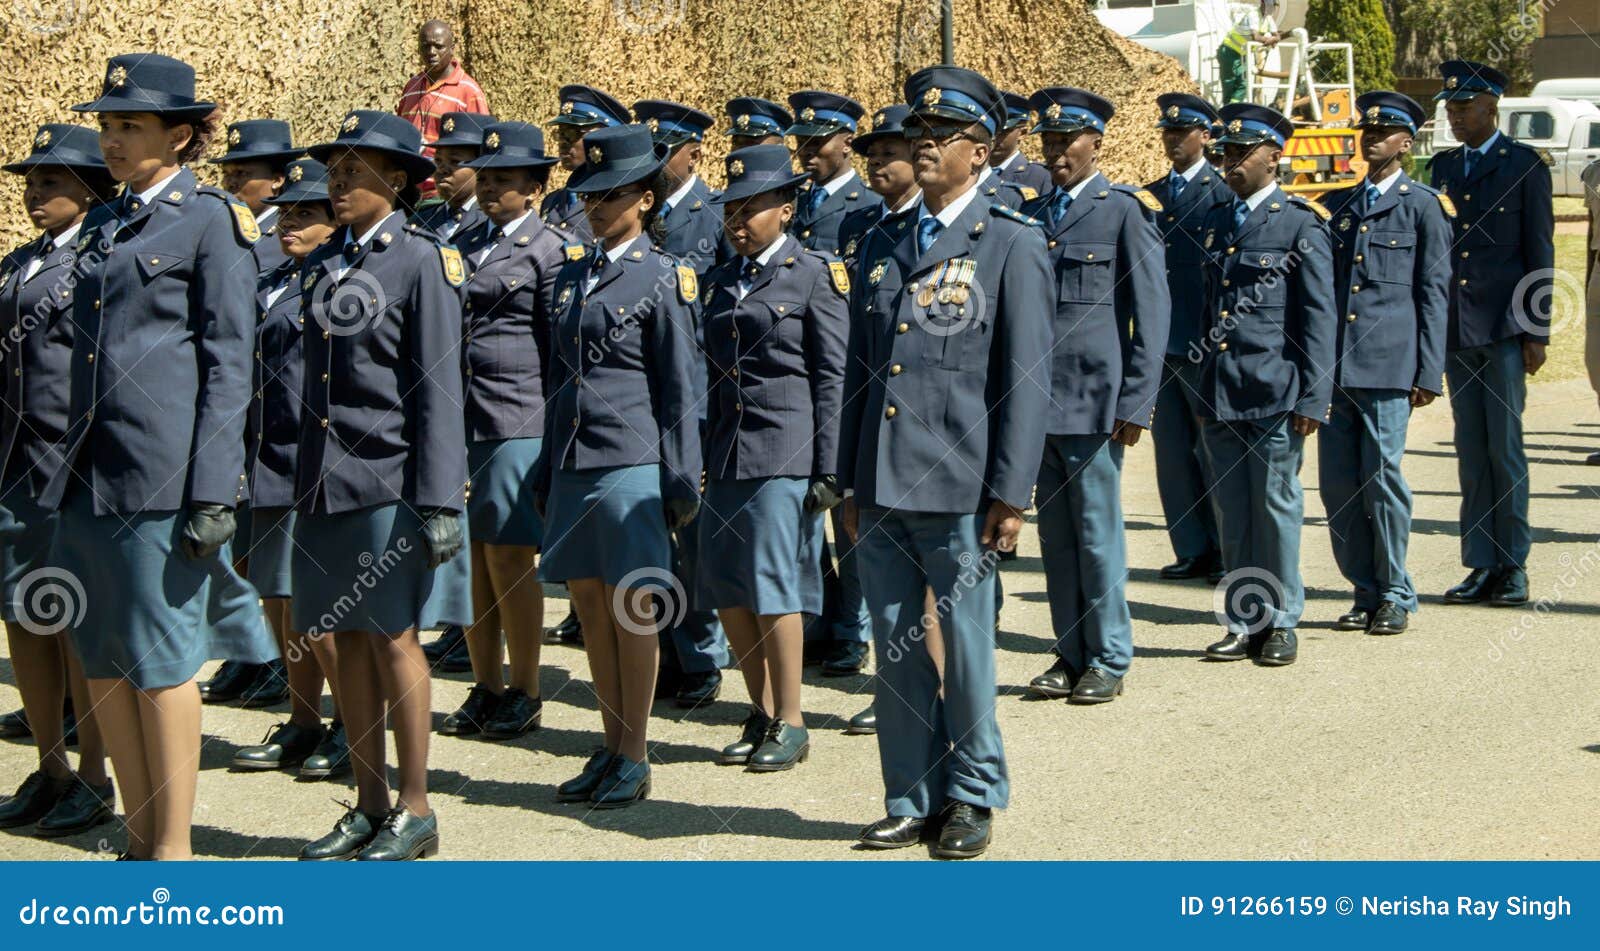 巡逻宽窄巷子观摩实战演练 南非警察来蓉开展国际警务交流访问